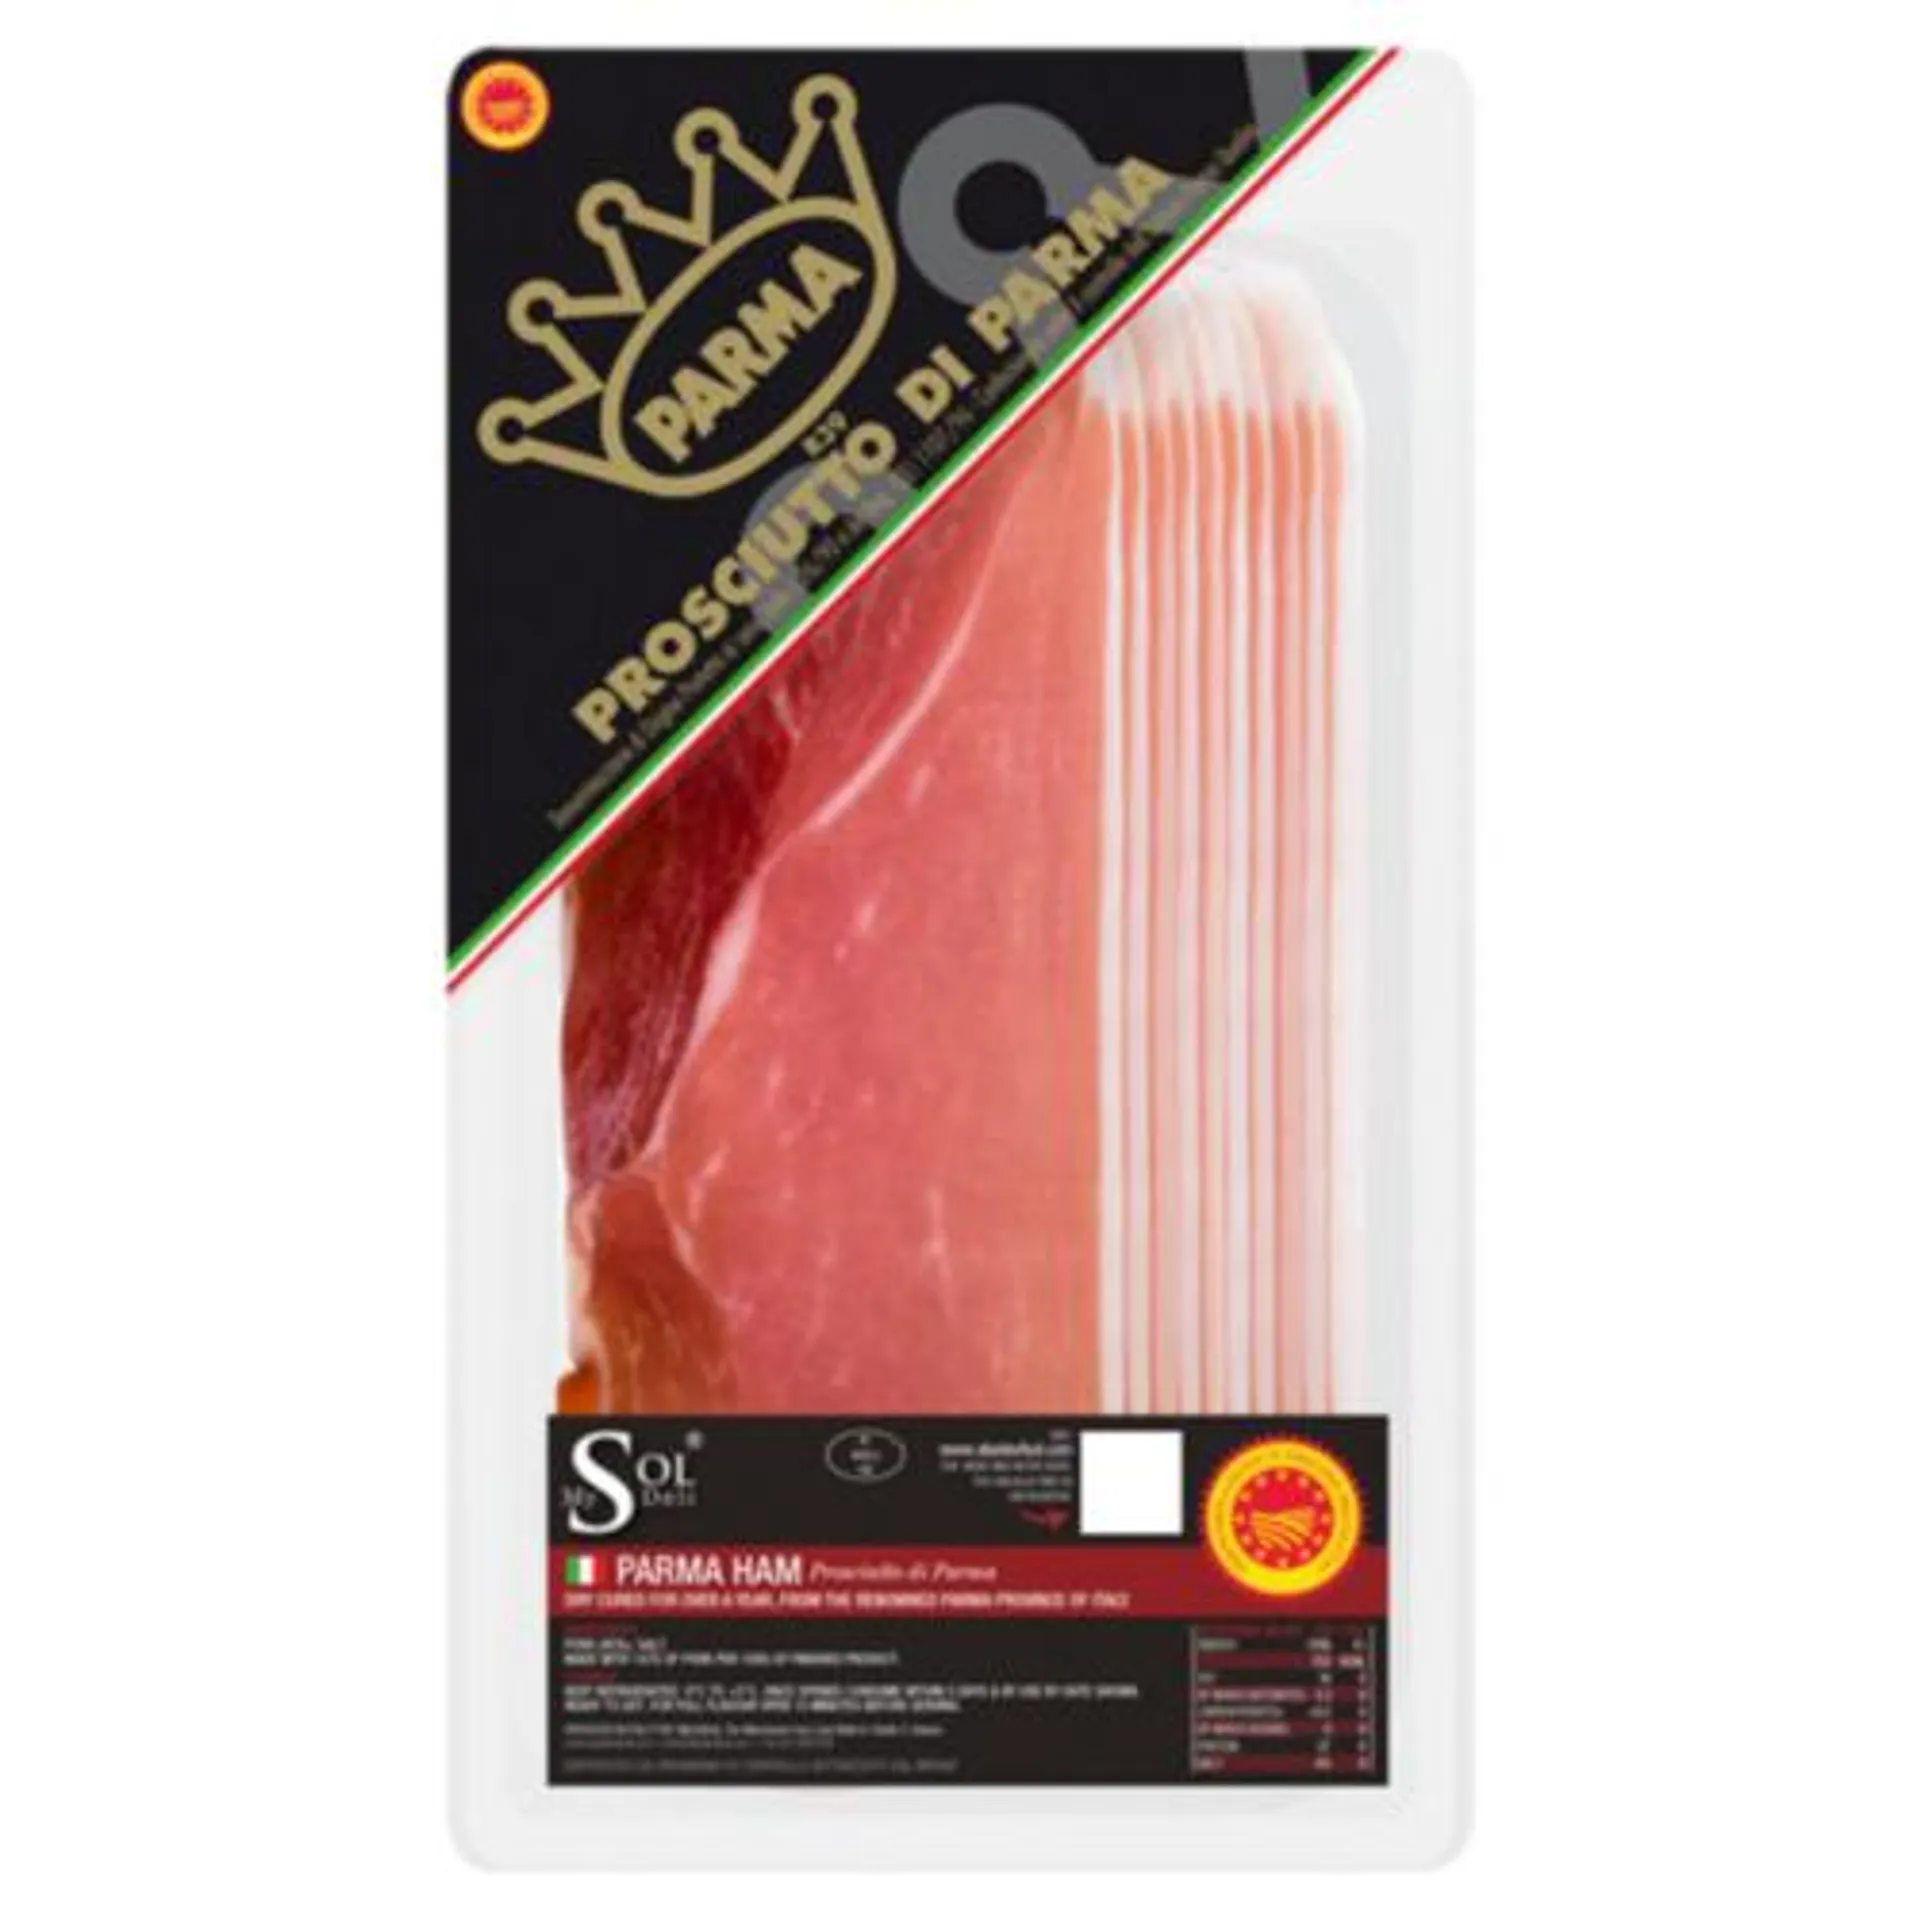 My Sol Deli Parma Ham Slices